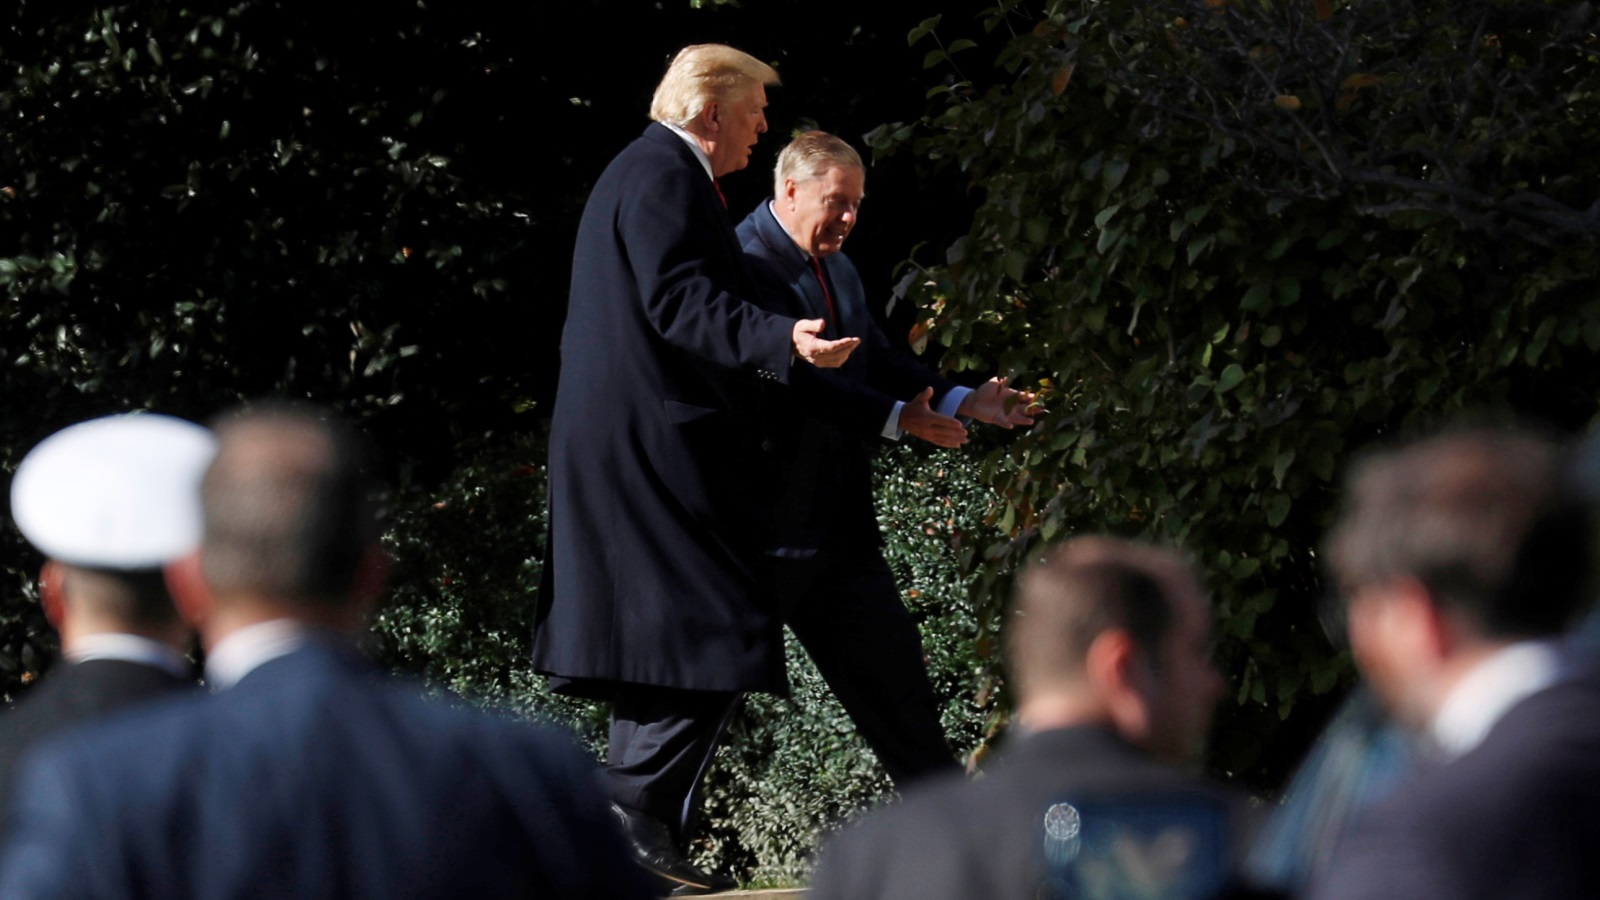 ‪غراهام وترامب في حديقة البيت الأبيض خلال لقائهما في نوفمبر/تشرين الثاني الماضي‬ غراهام وترامب في حديقة البيت الأبيض خلال لقائهما في نوفمبر/تشرين الثاني الماضي (رويترز)